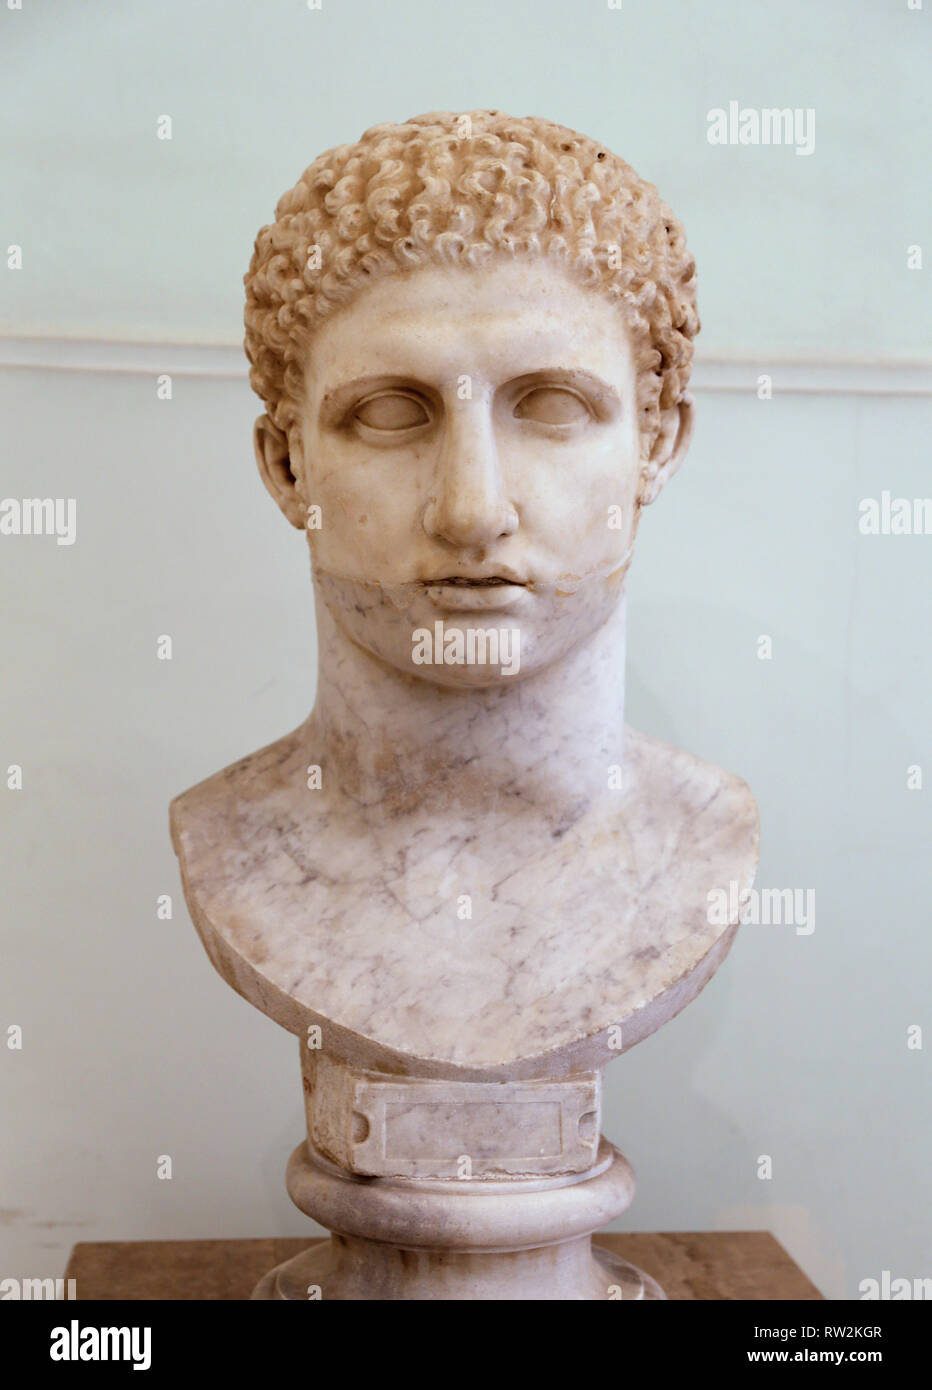 Hercules joven. Busto de mármol (siglo II D.C.) copia de un original griego del siglo IV A.C. Museo Arqueológico Nacional, Nápoles. Foto de stock